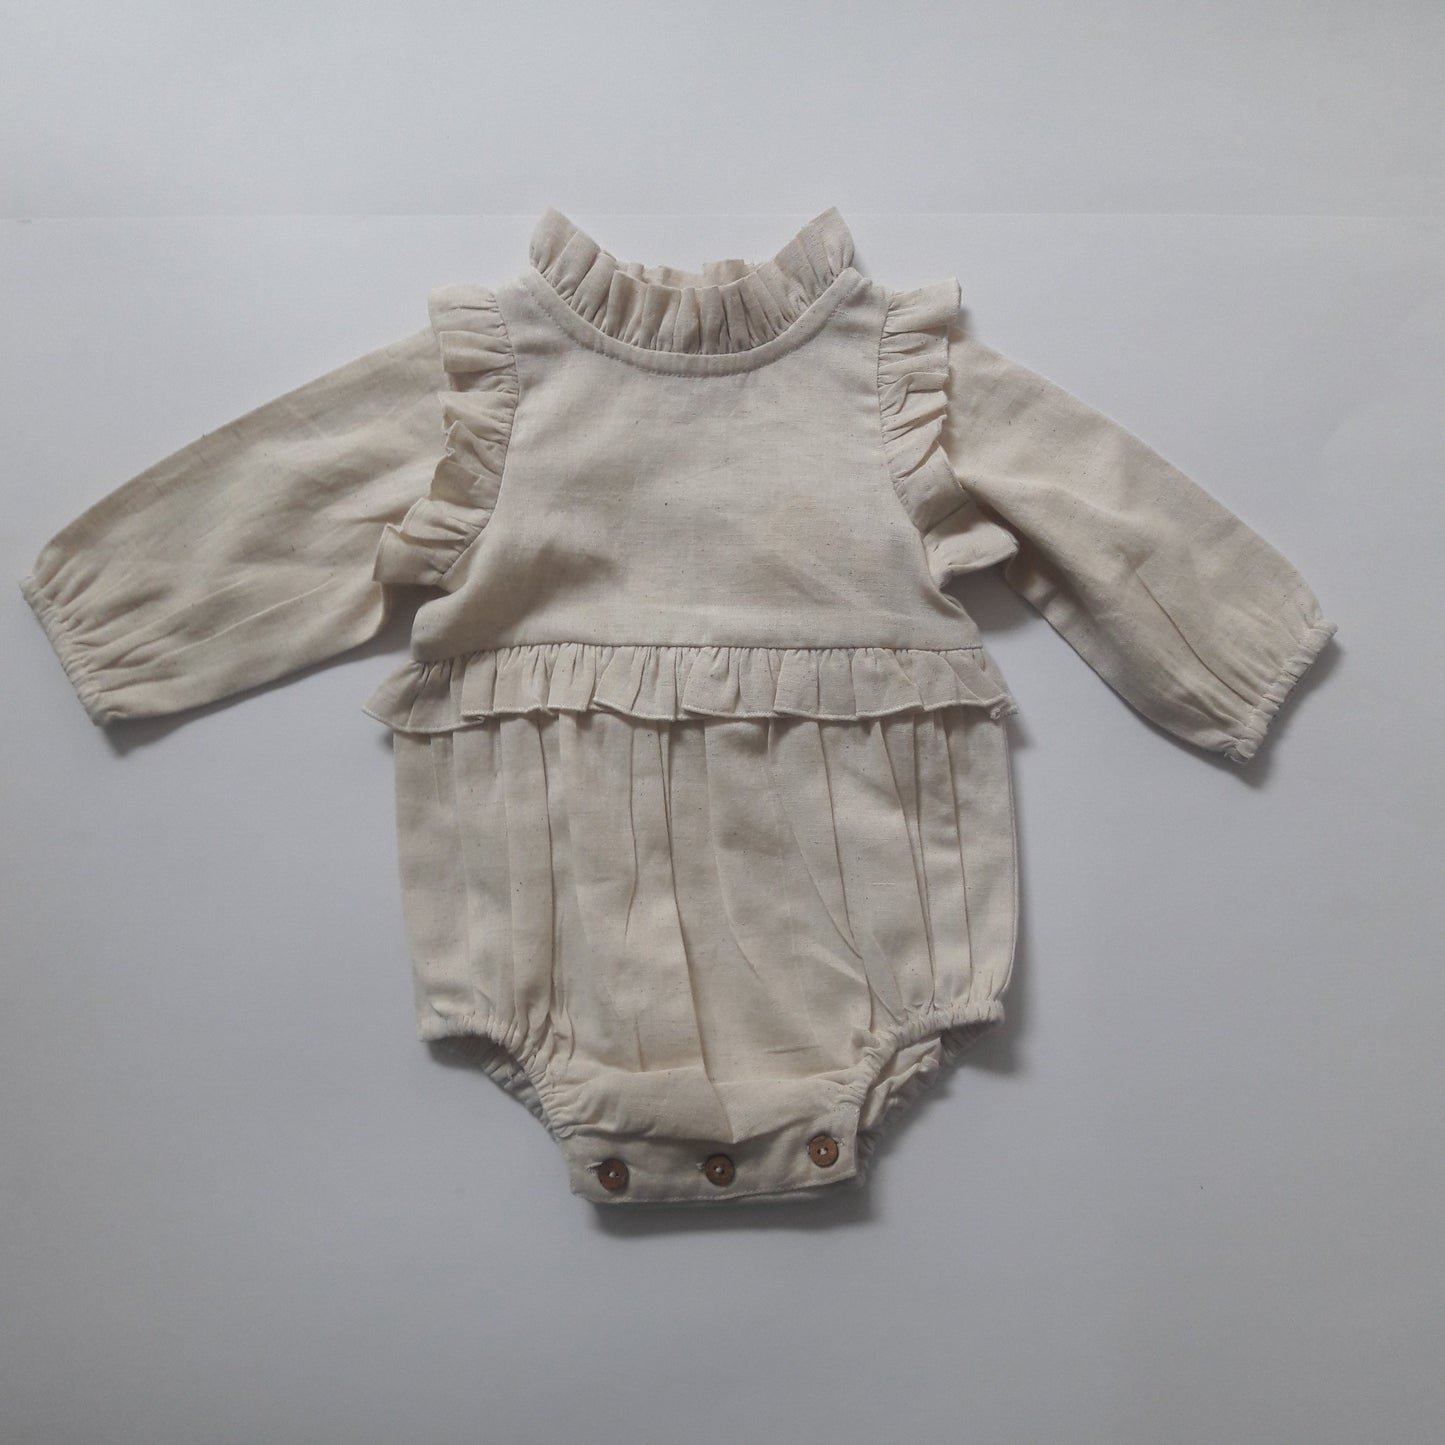 Ivory Full-Sleeves Ruffles Infant Romper